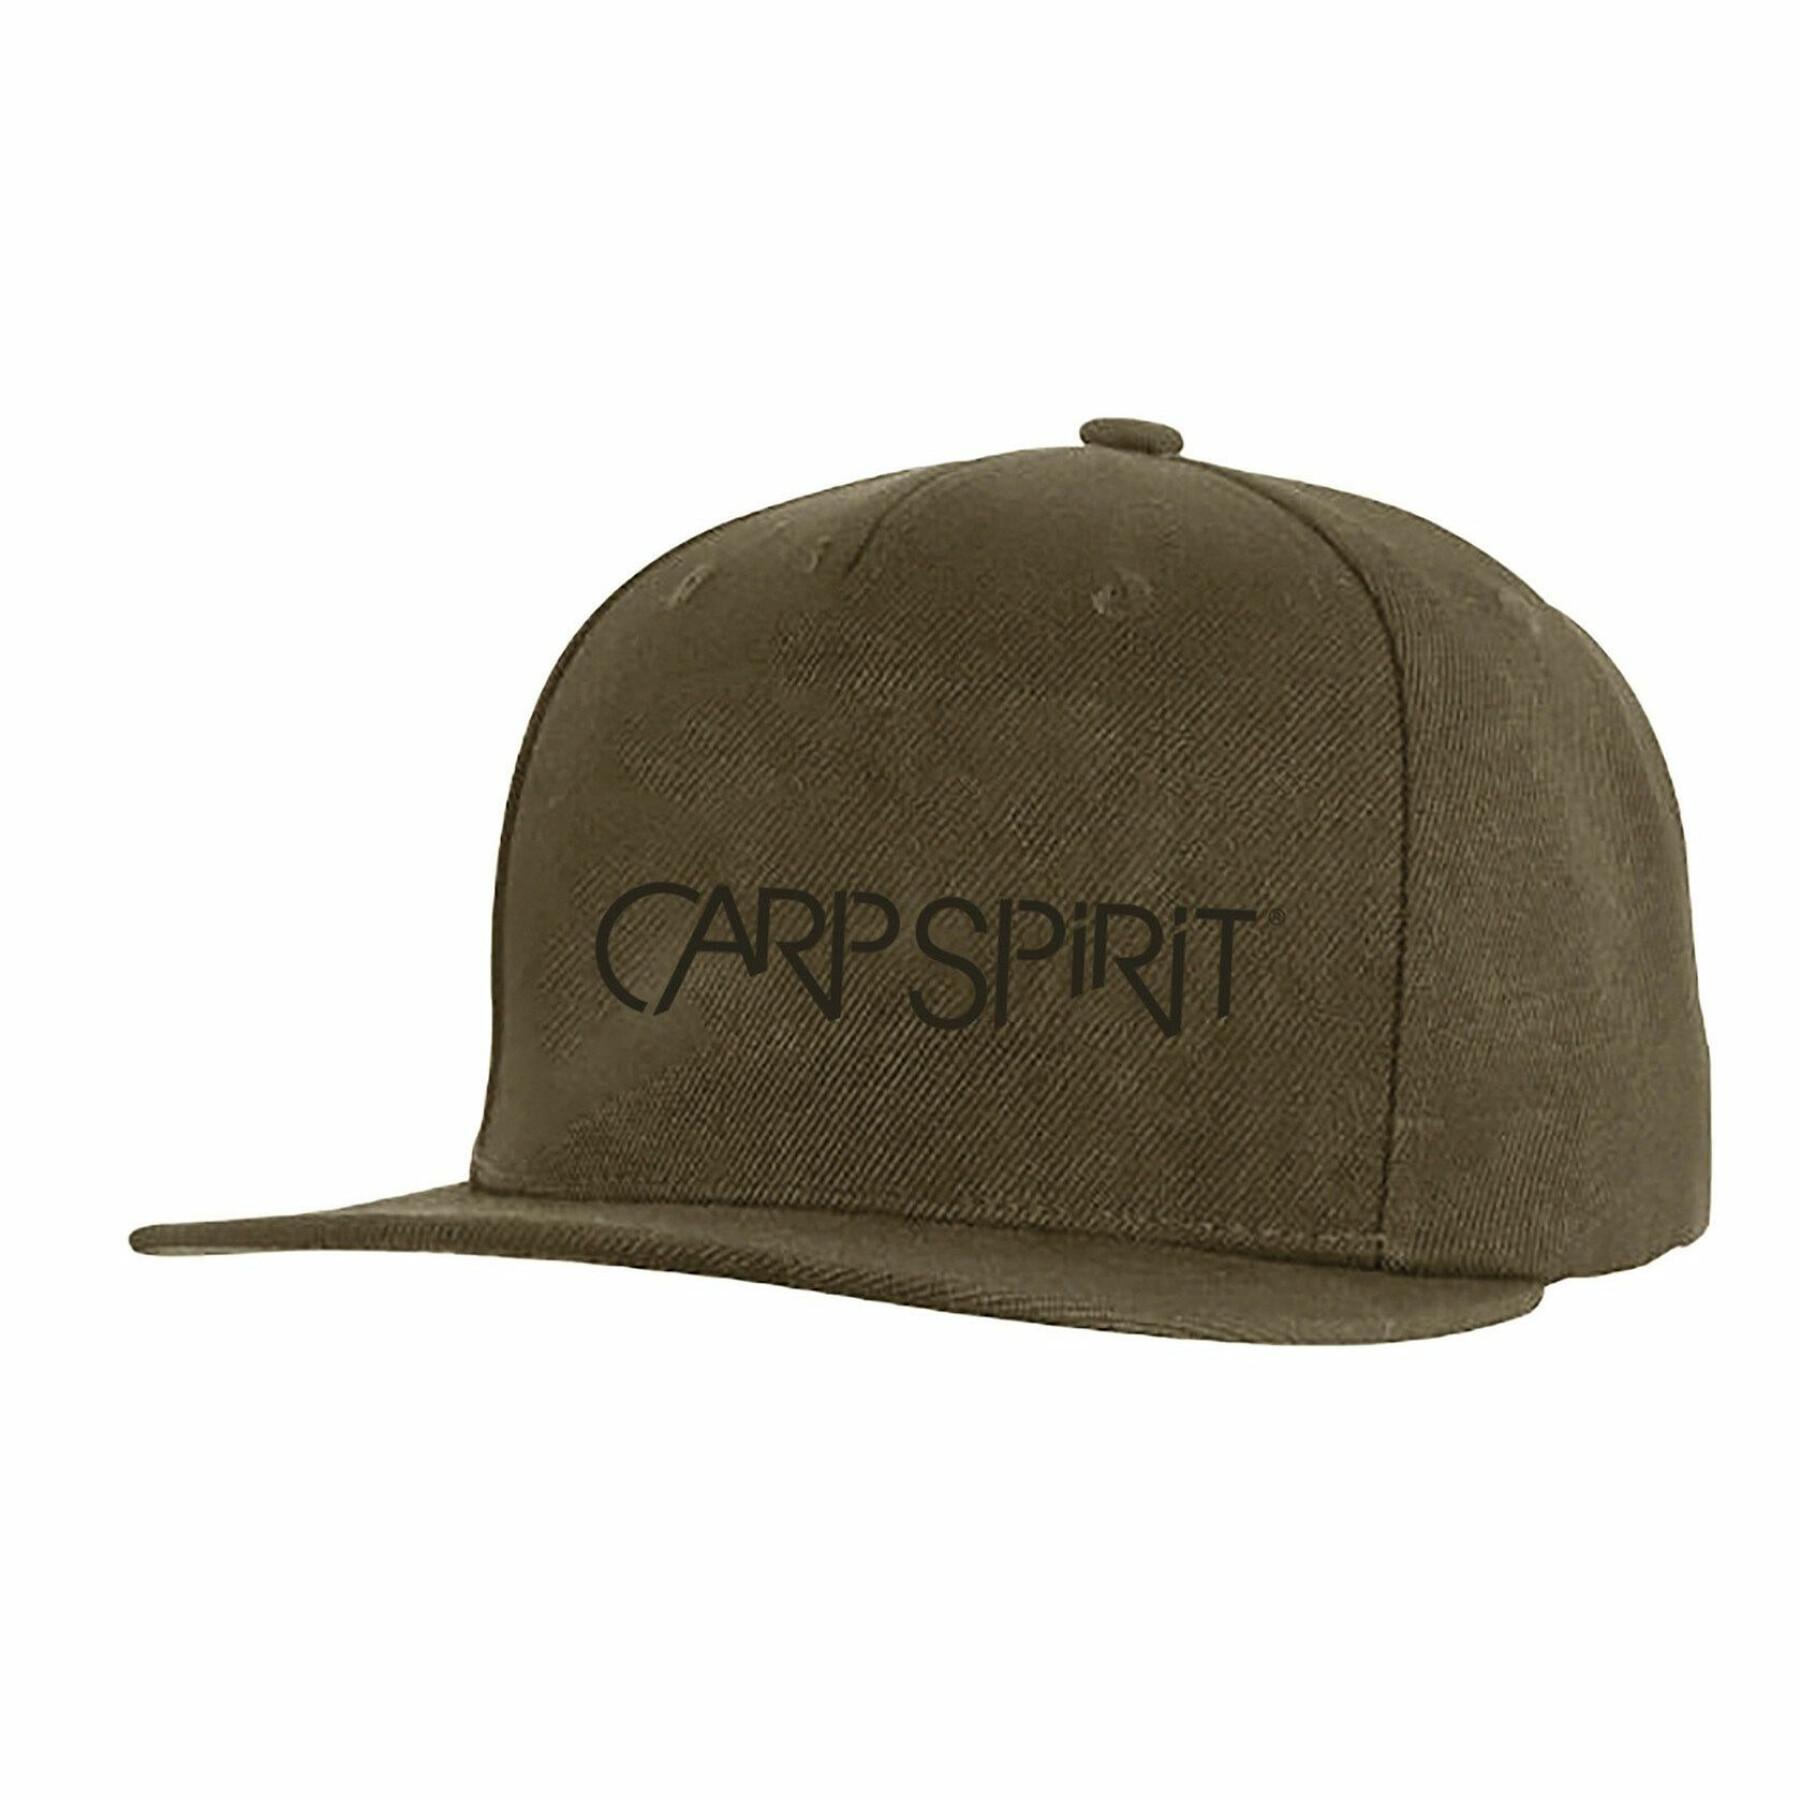 Cap Carp Spirit 3d logo flat peak